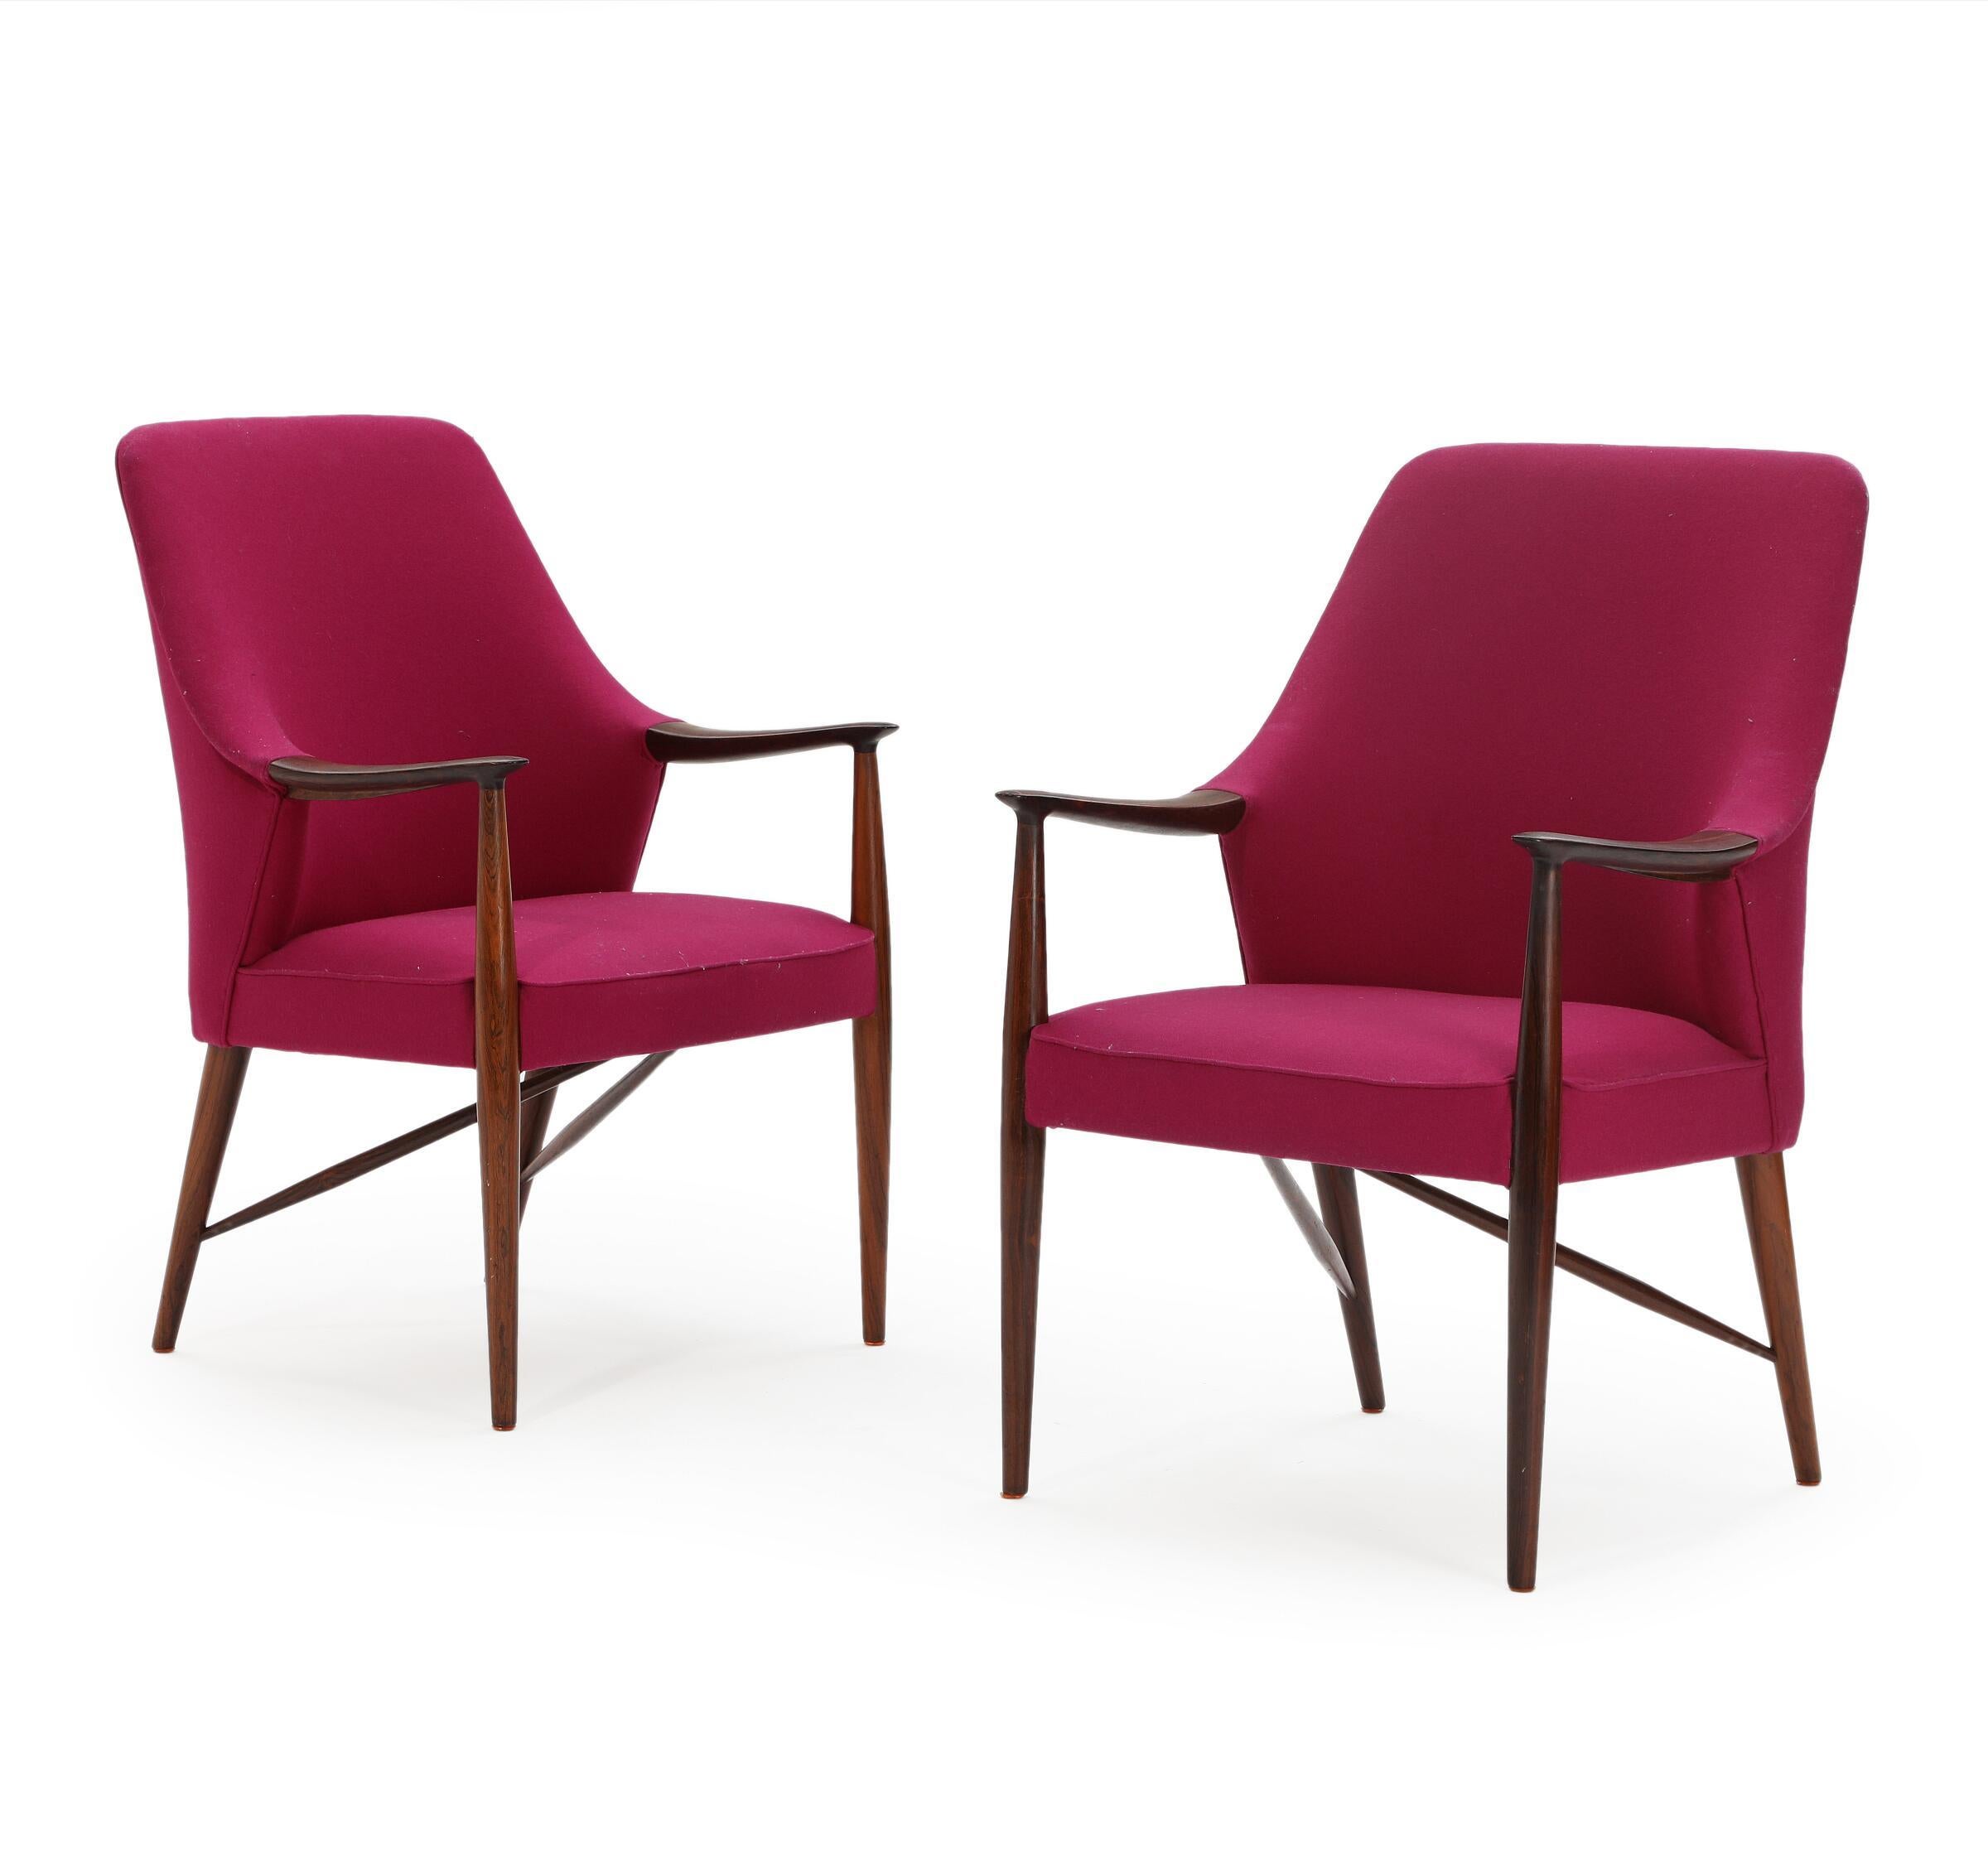 Une paire de fauteuils du milieu du siècle dernier attribuée aux architectes danois Peter Hvidt & Orla Mølgaard Nielsen. Fabriqué au Danemark dans les années 1940. Vraisemblablement fabriqué par Udført hos A.J. Iversen. Variante du modèle présenté à